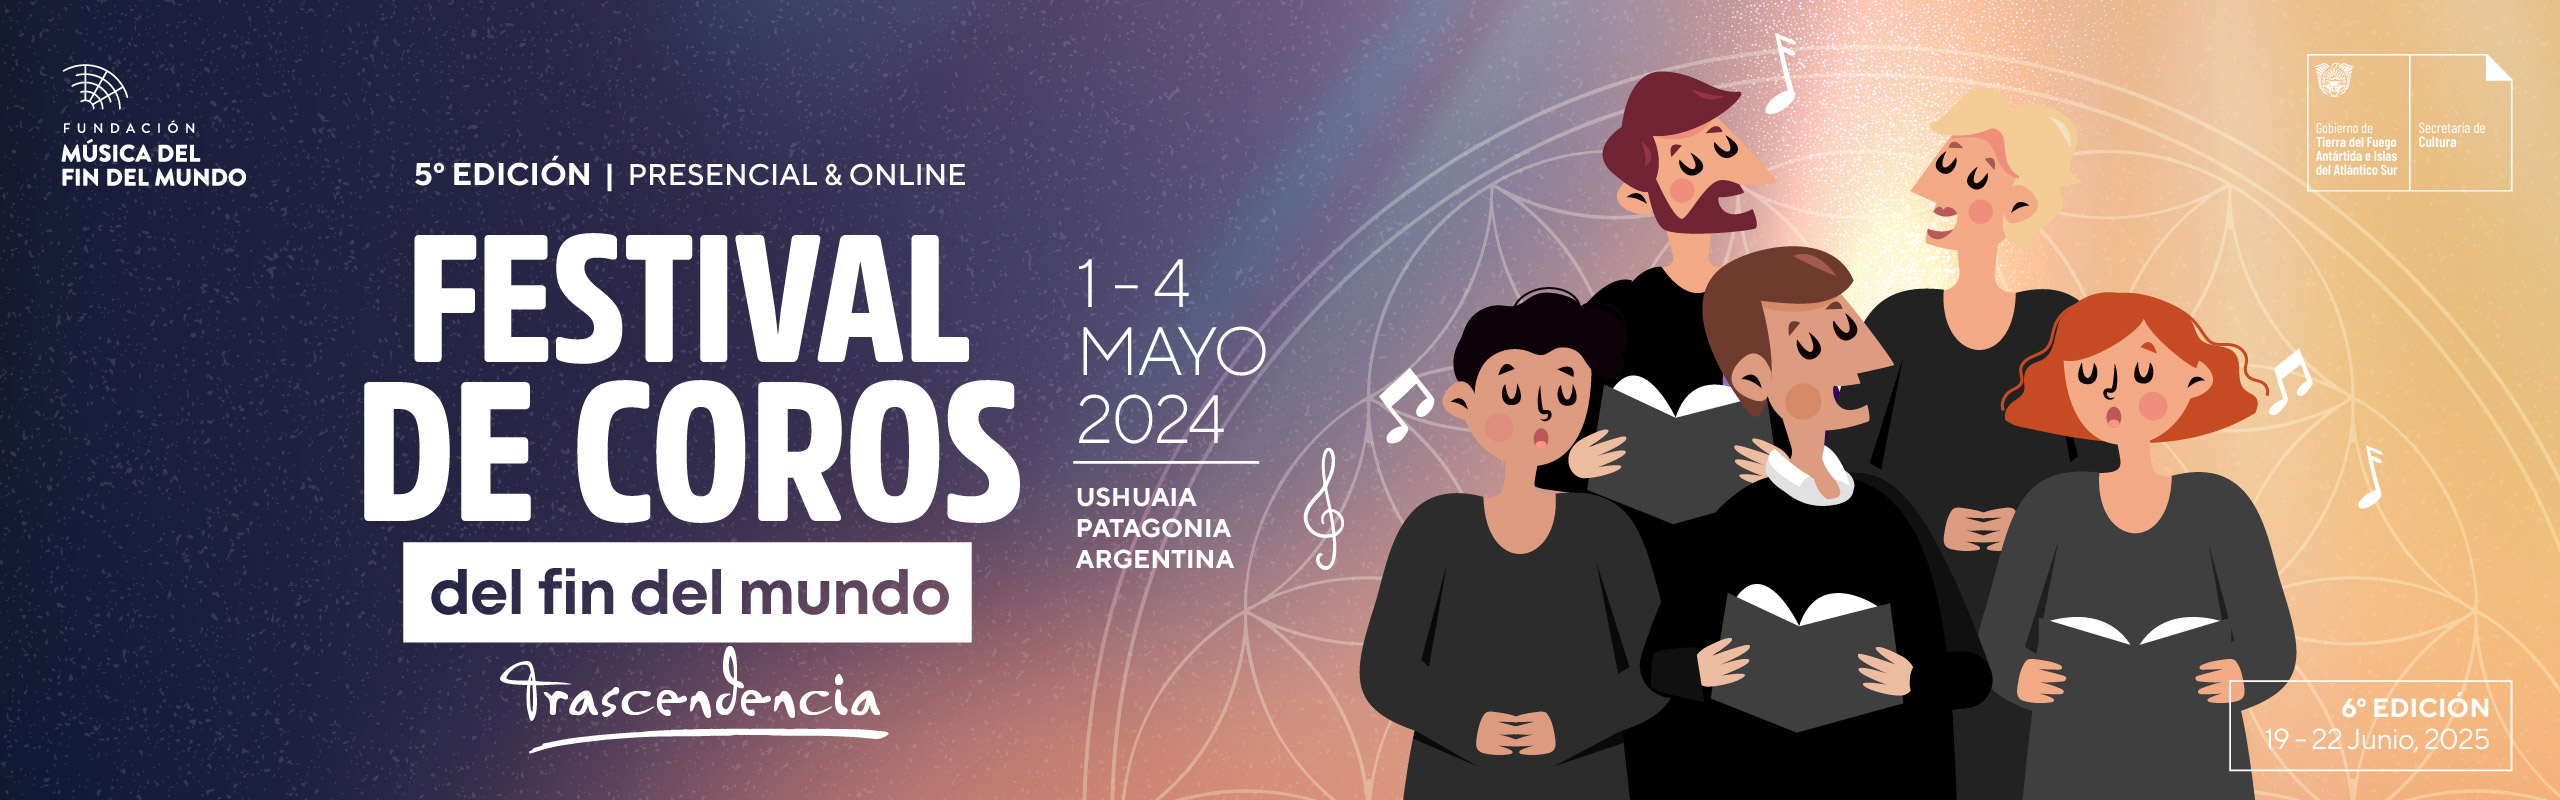 Festival de Coros del Fin del Mundo 2024 | End of the world Choir Festival 2024